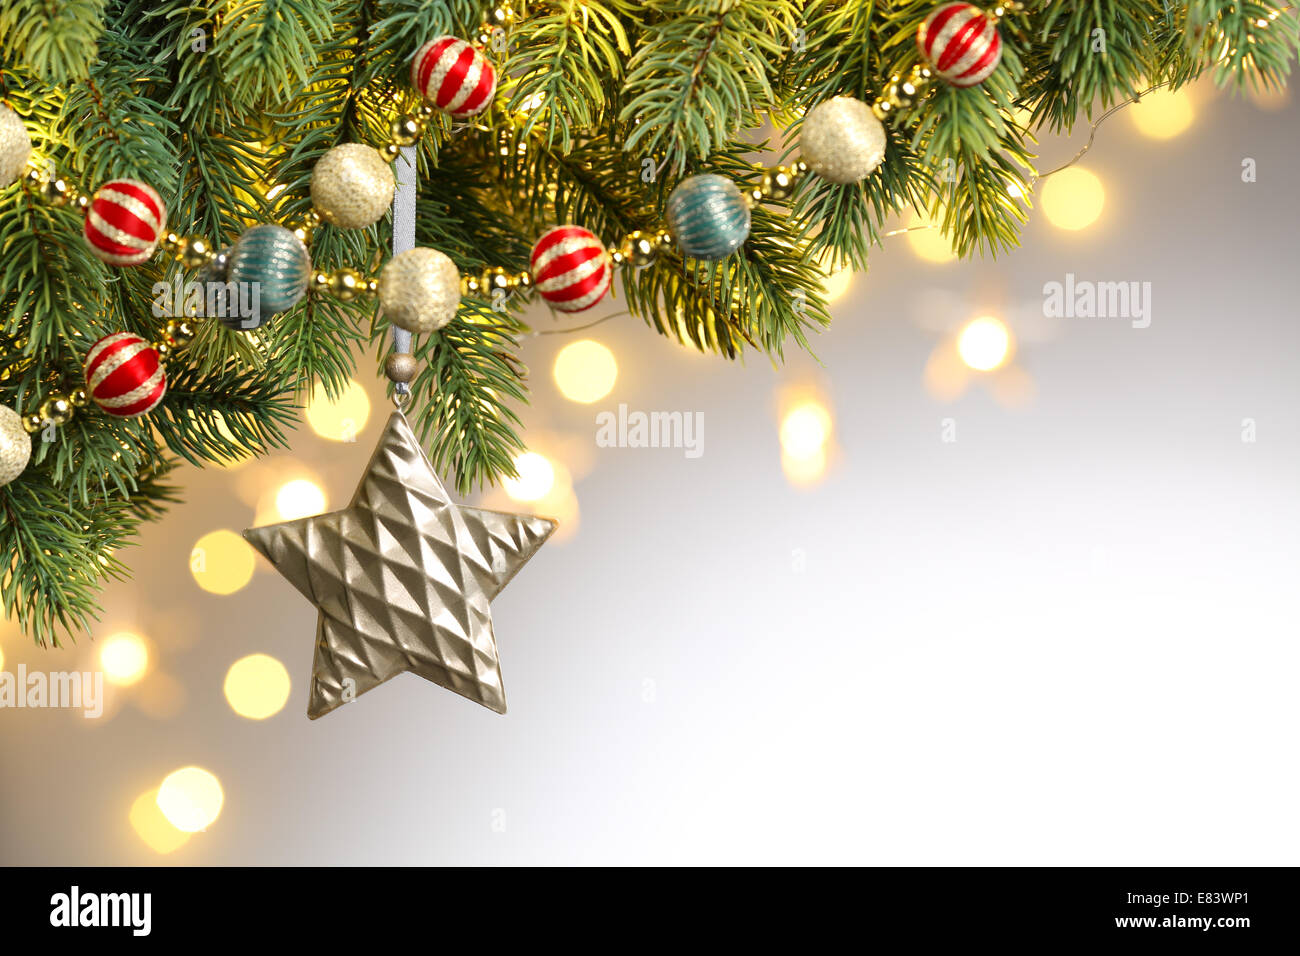 Primer plano de adornos del árbol de Navidad Foto de stock